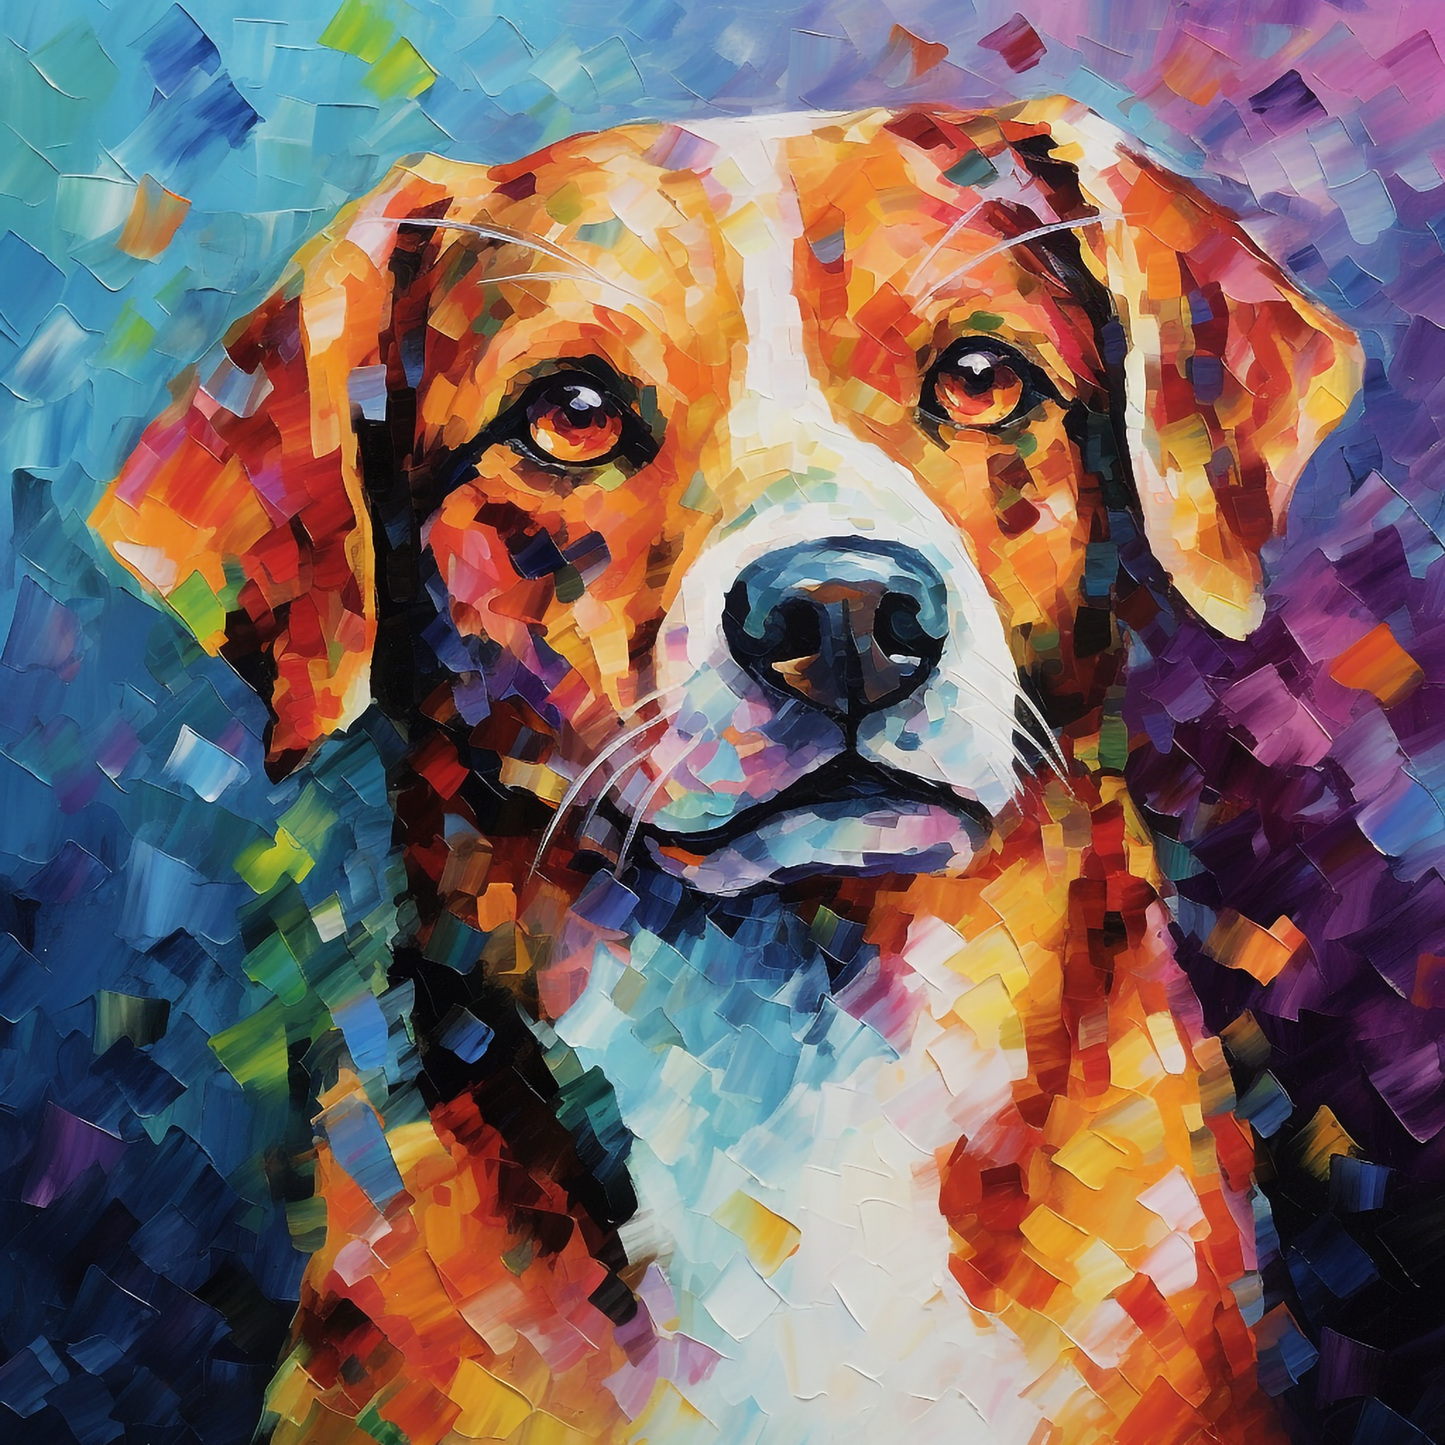 Mosaic Dog AI by Leonid Afremov 16x16in